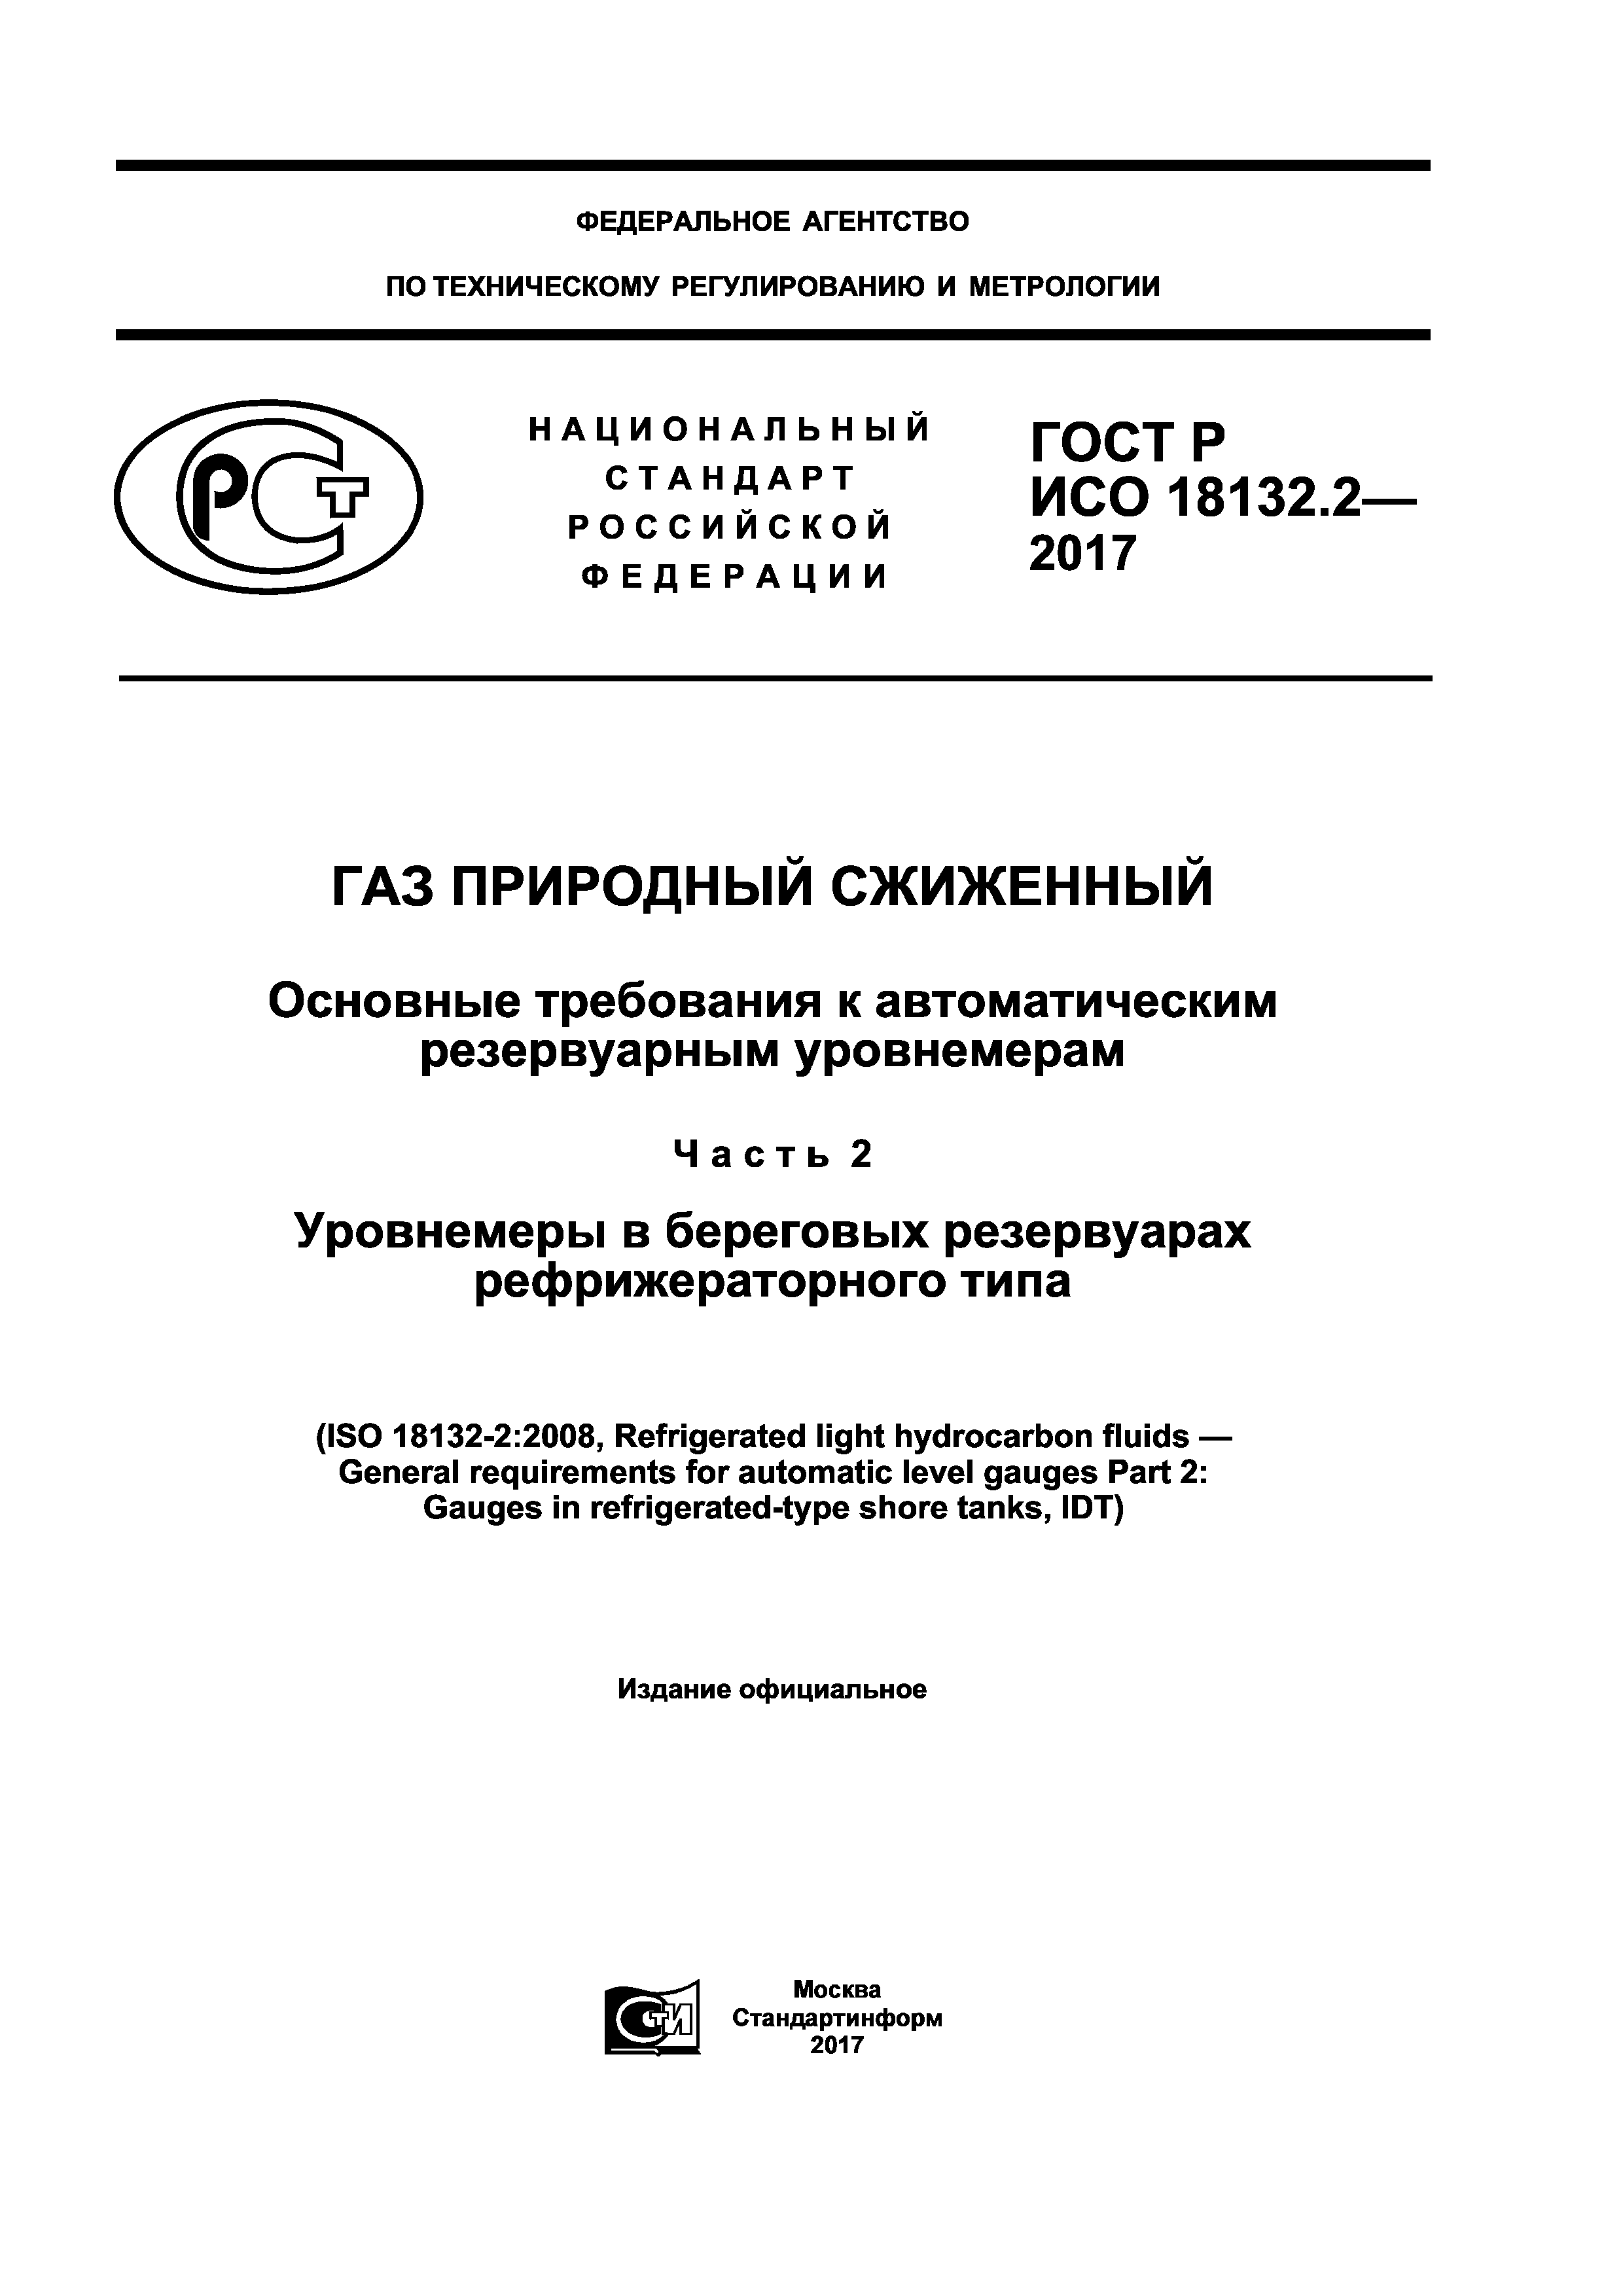 ГОСТ Р ИСО 18132.2-2017